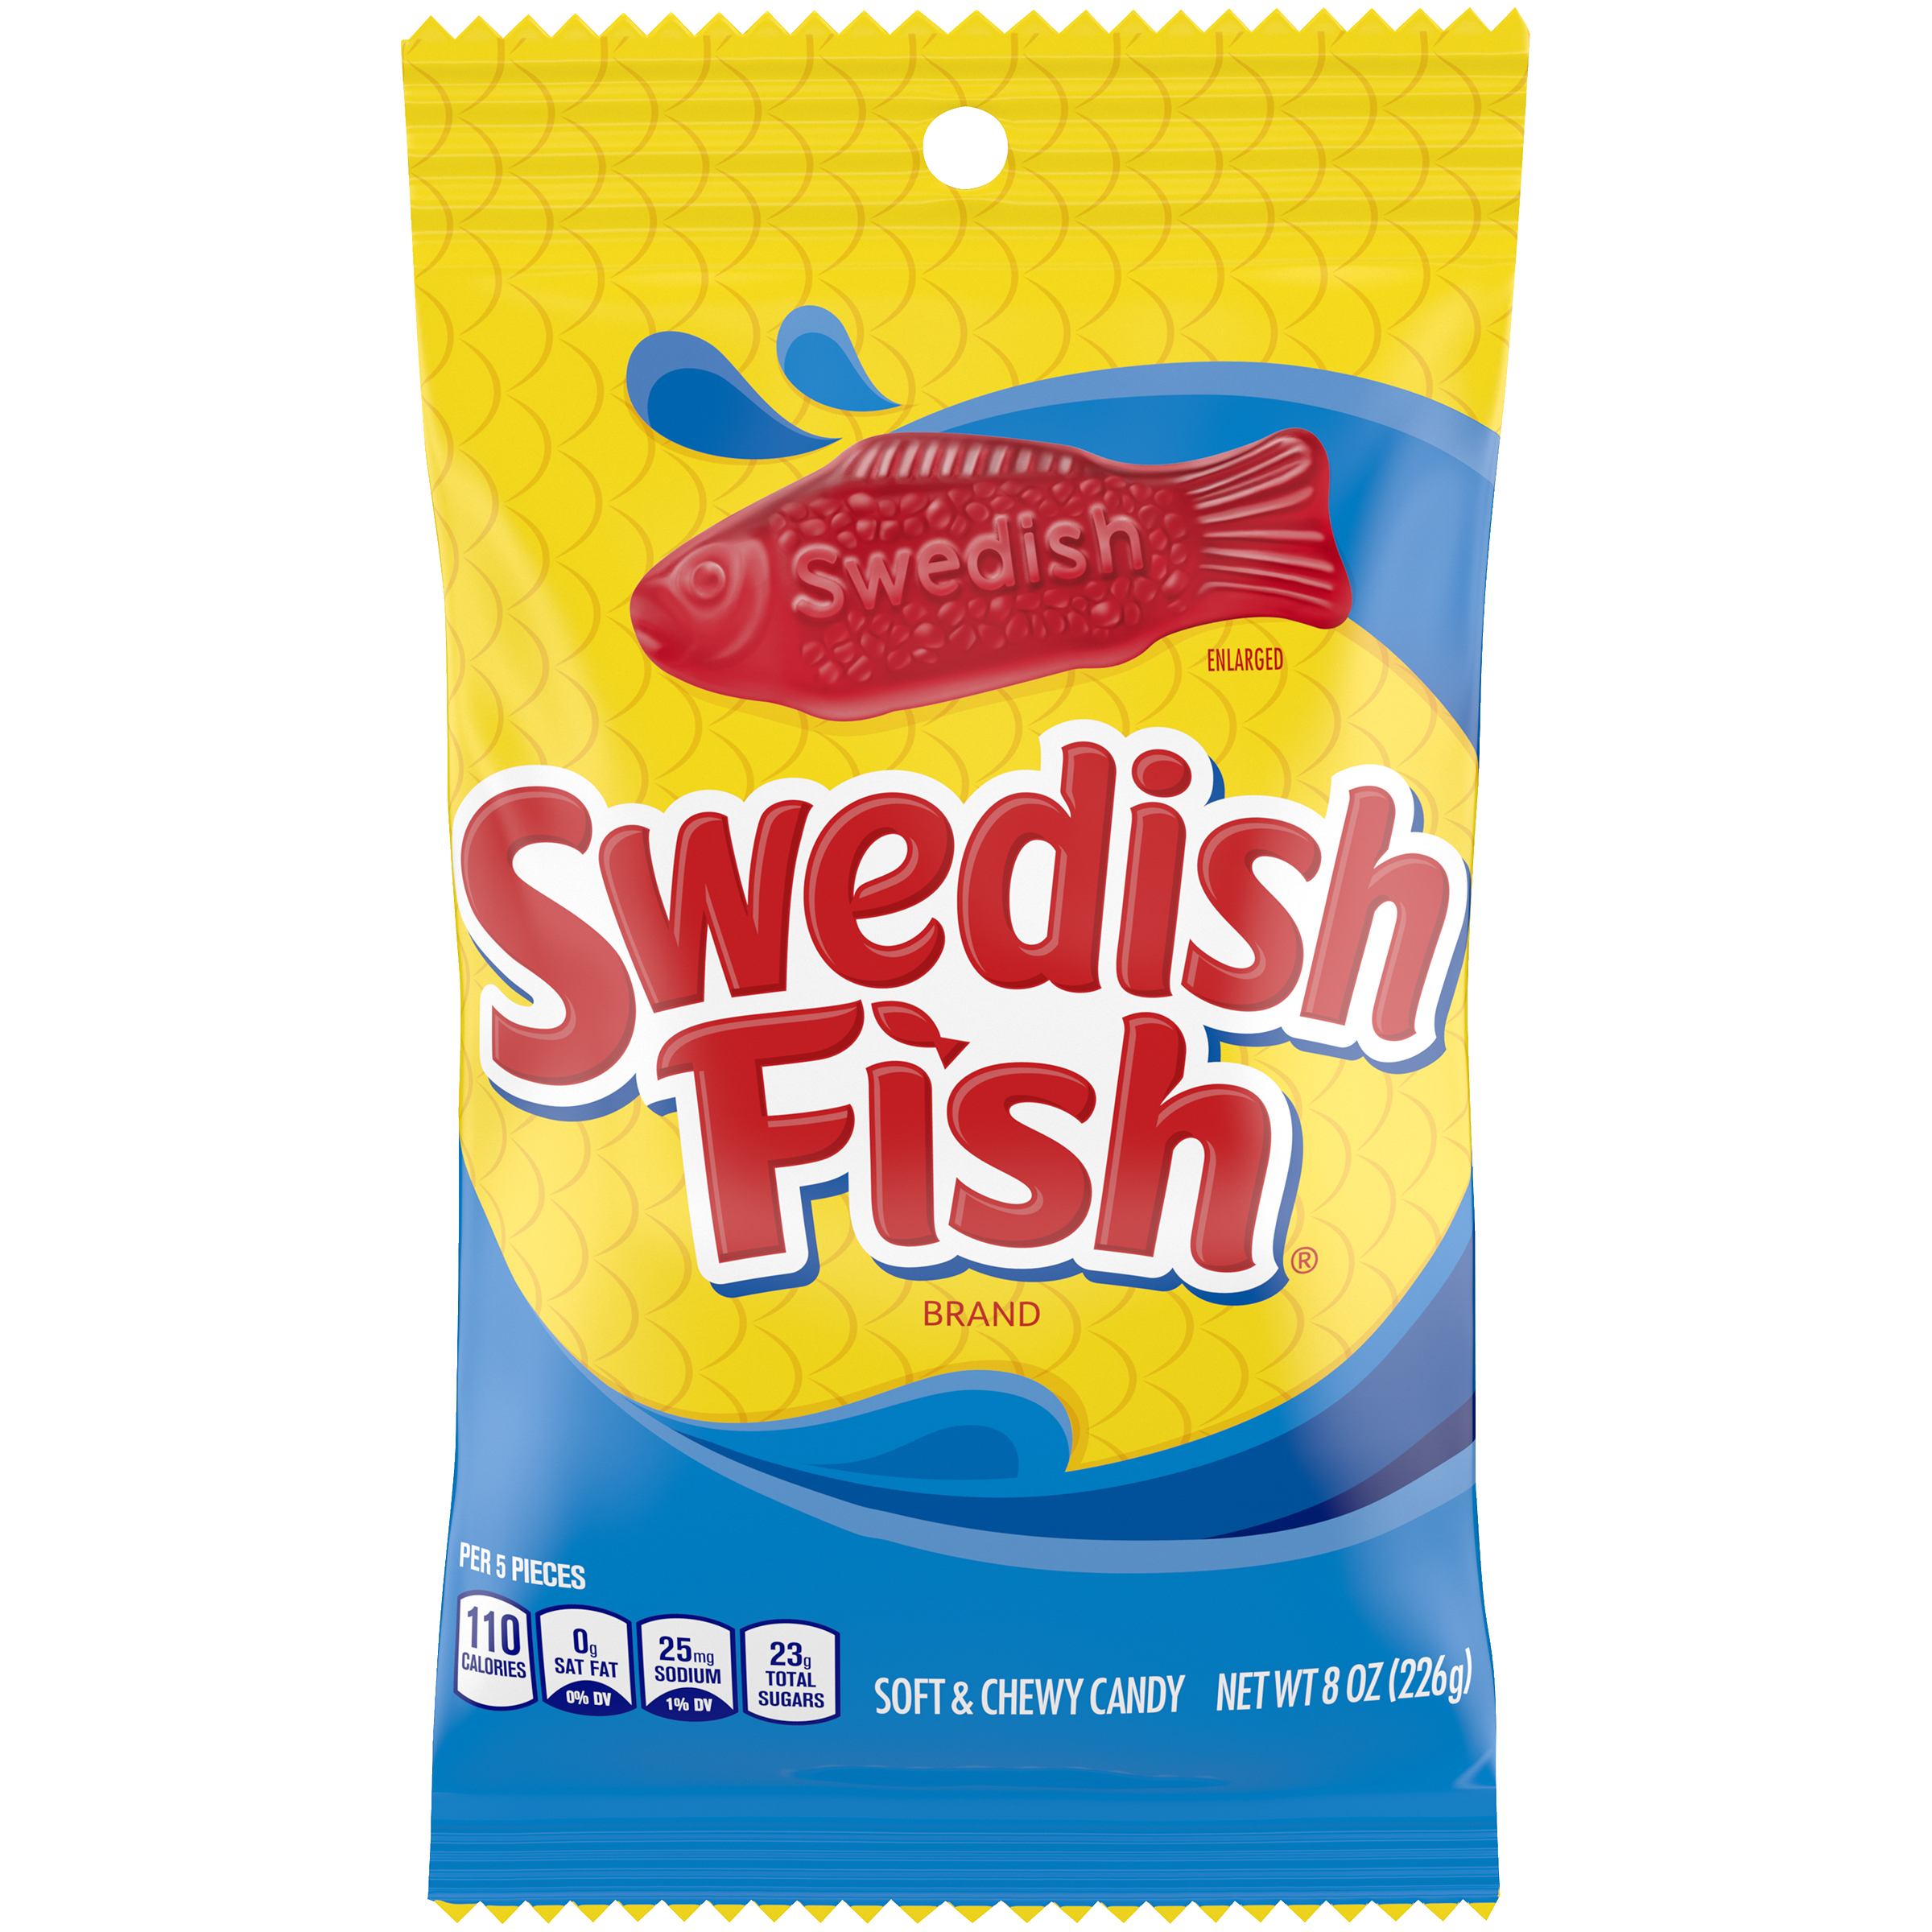 Swedish fish 8oz